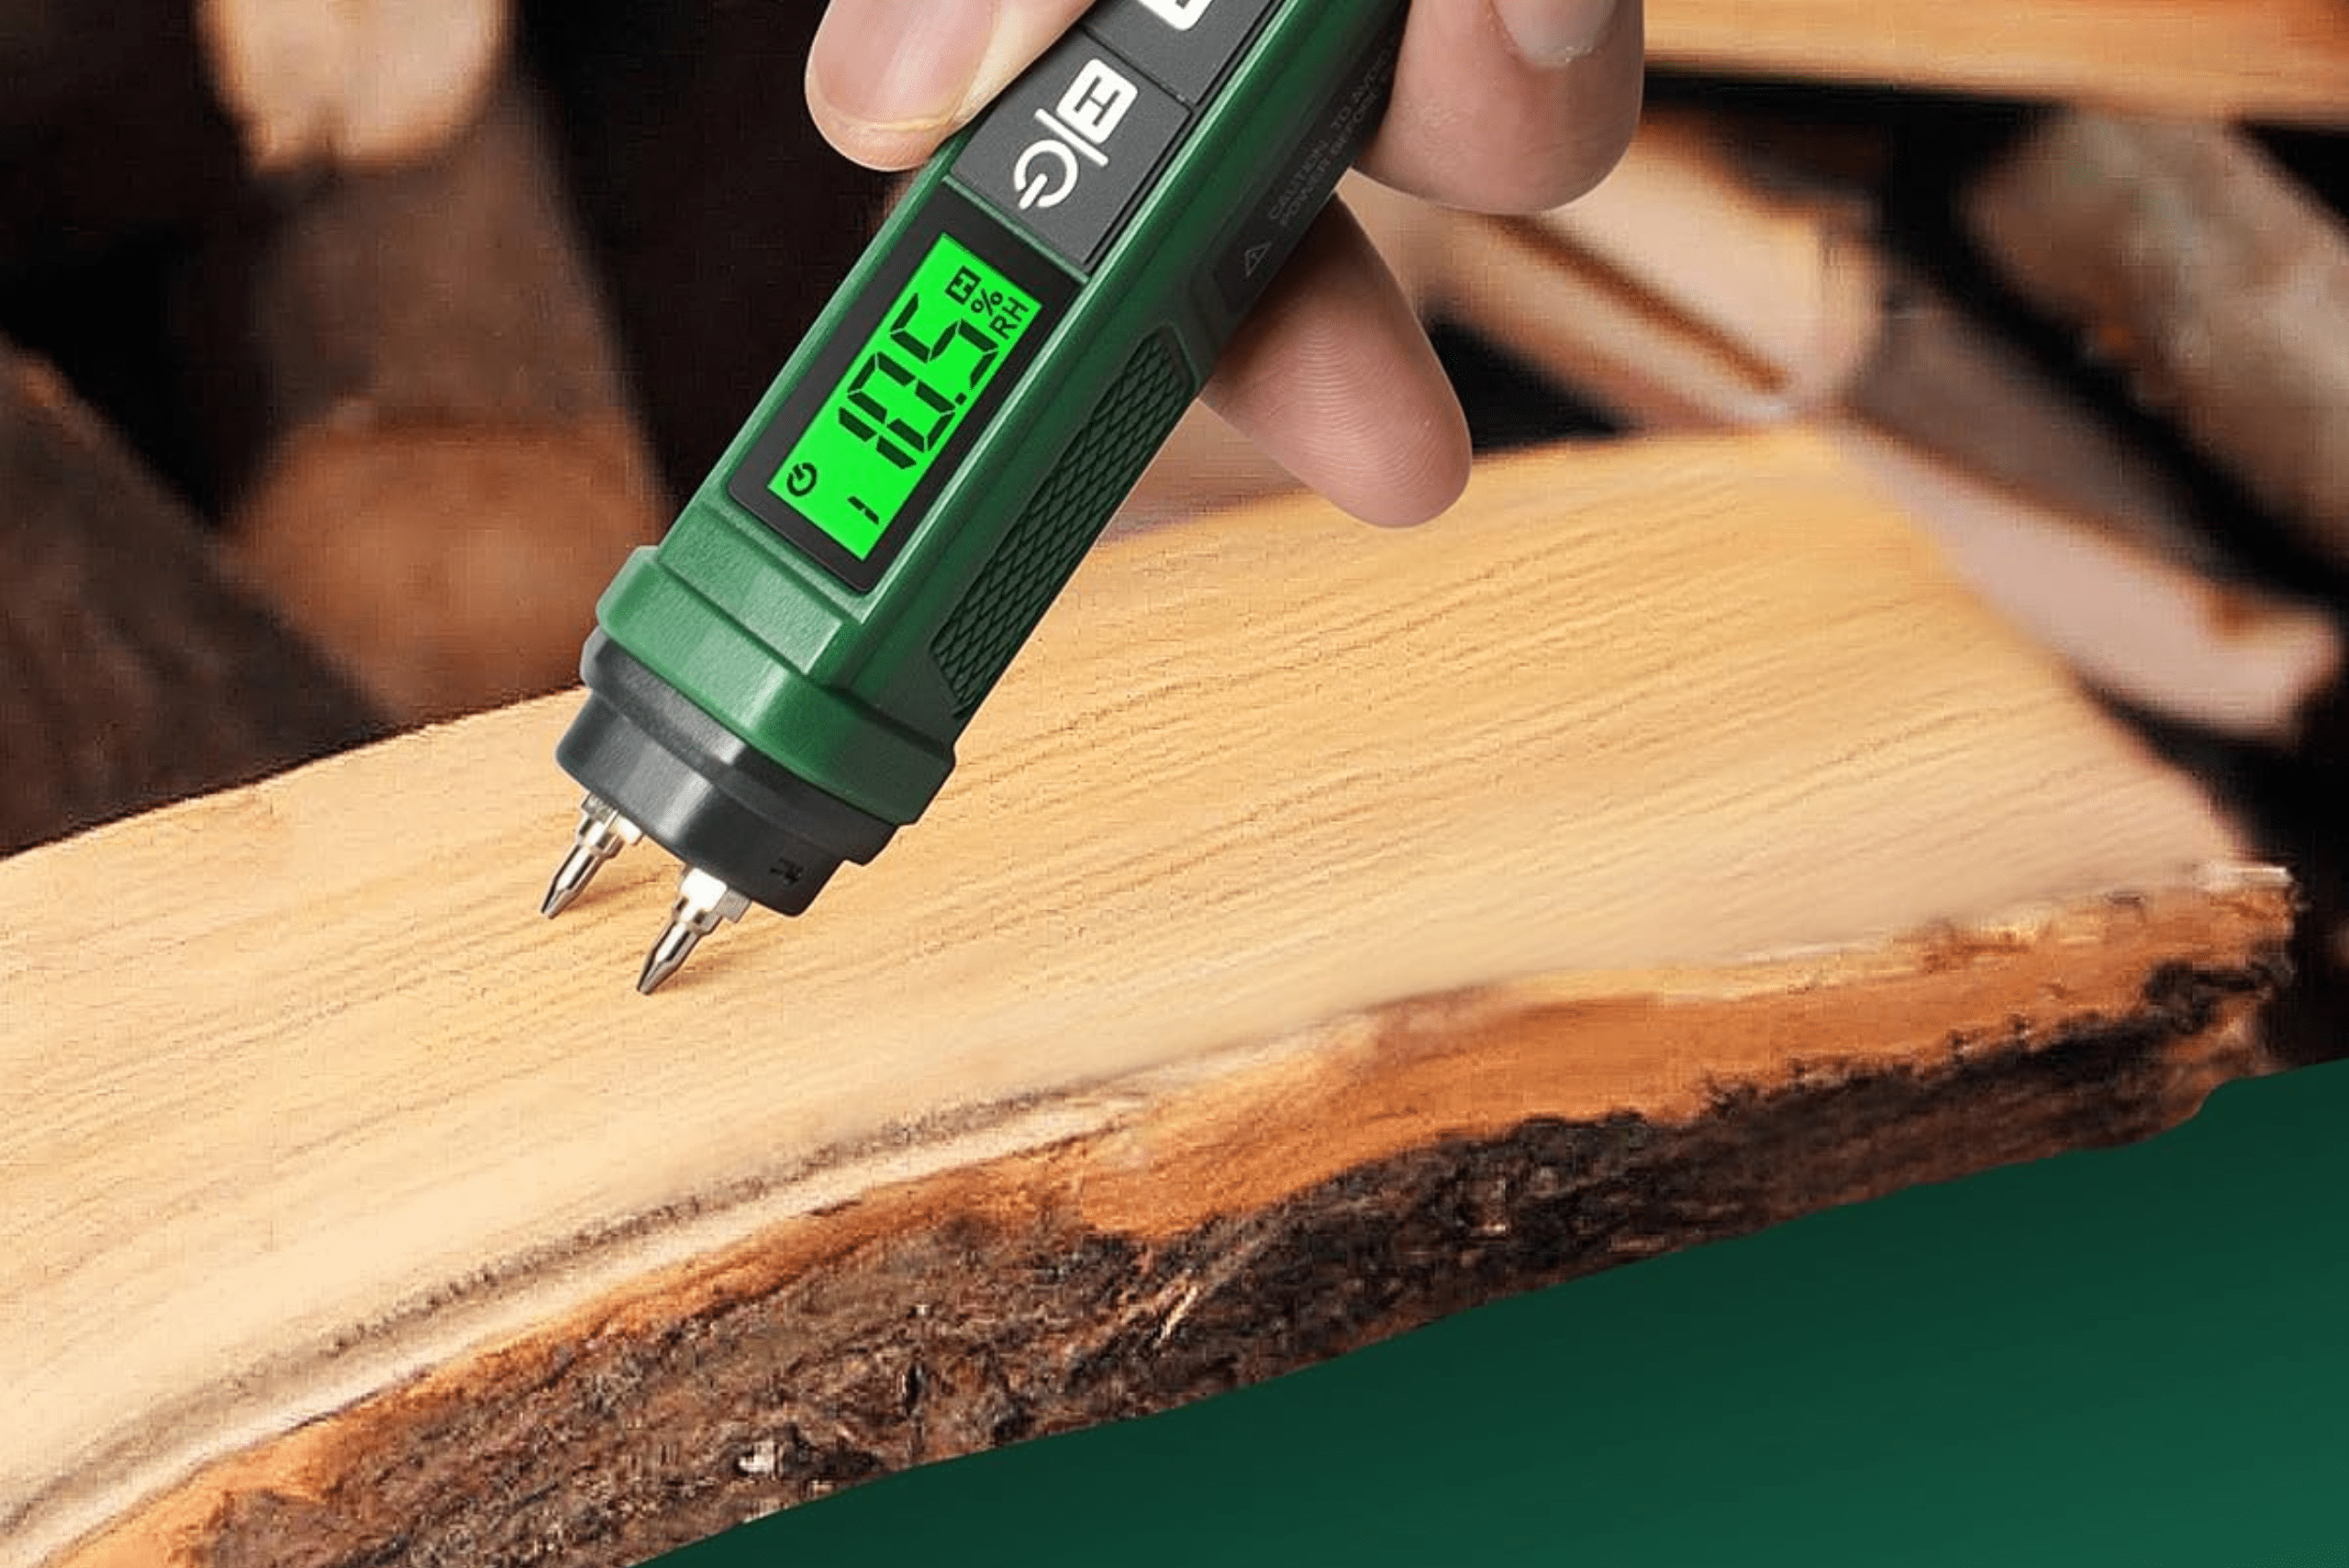 Moisture testing meter device used on wood.